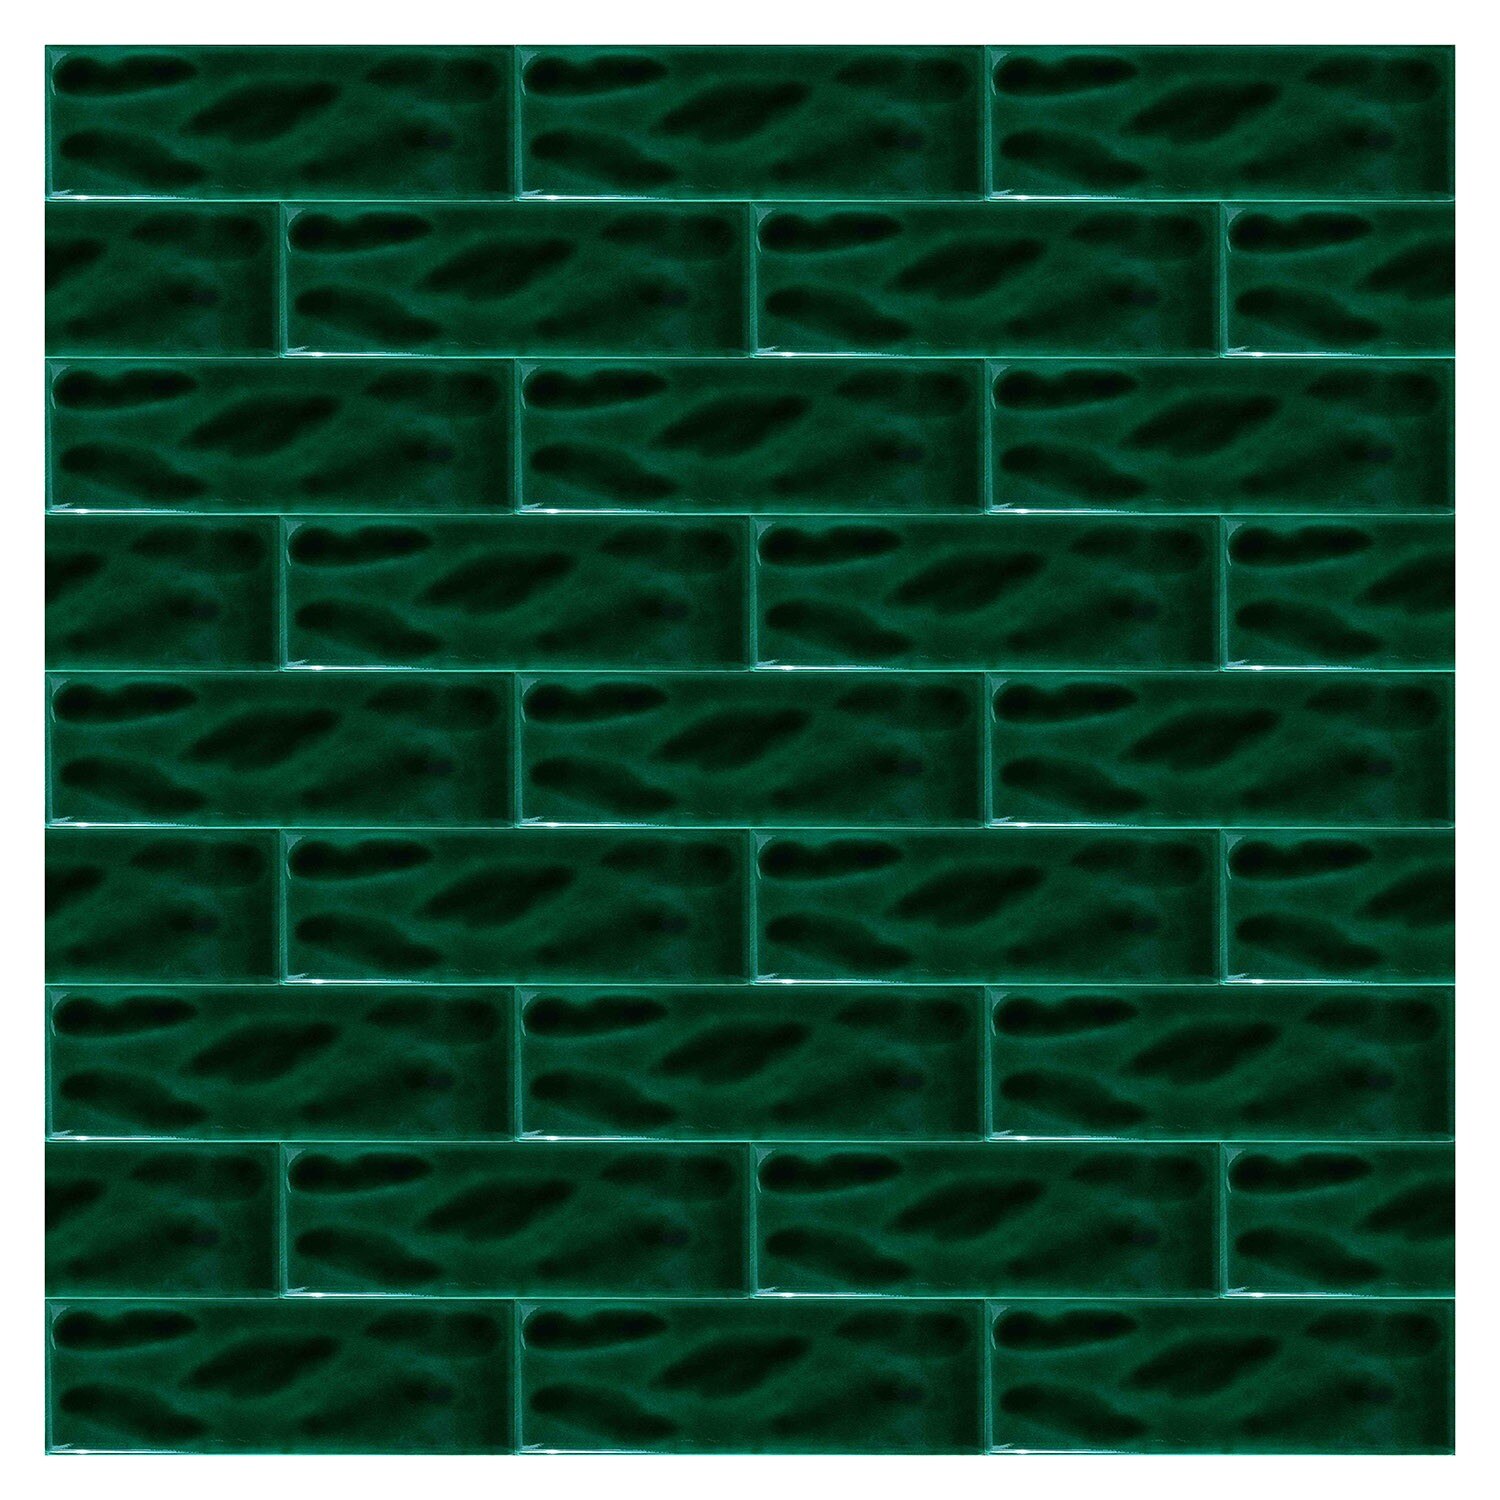 Armada flise 7 x 21 cm skraverede grønne mønstrede fliser keramiske fliser